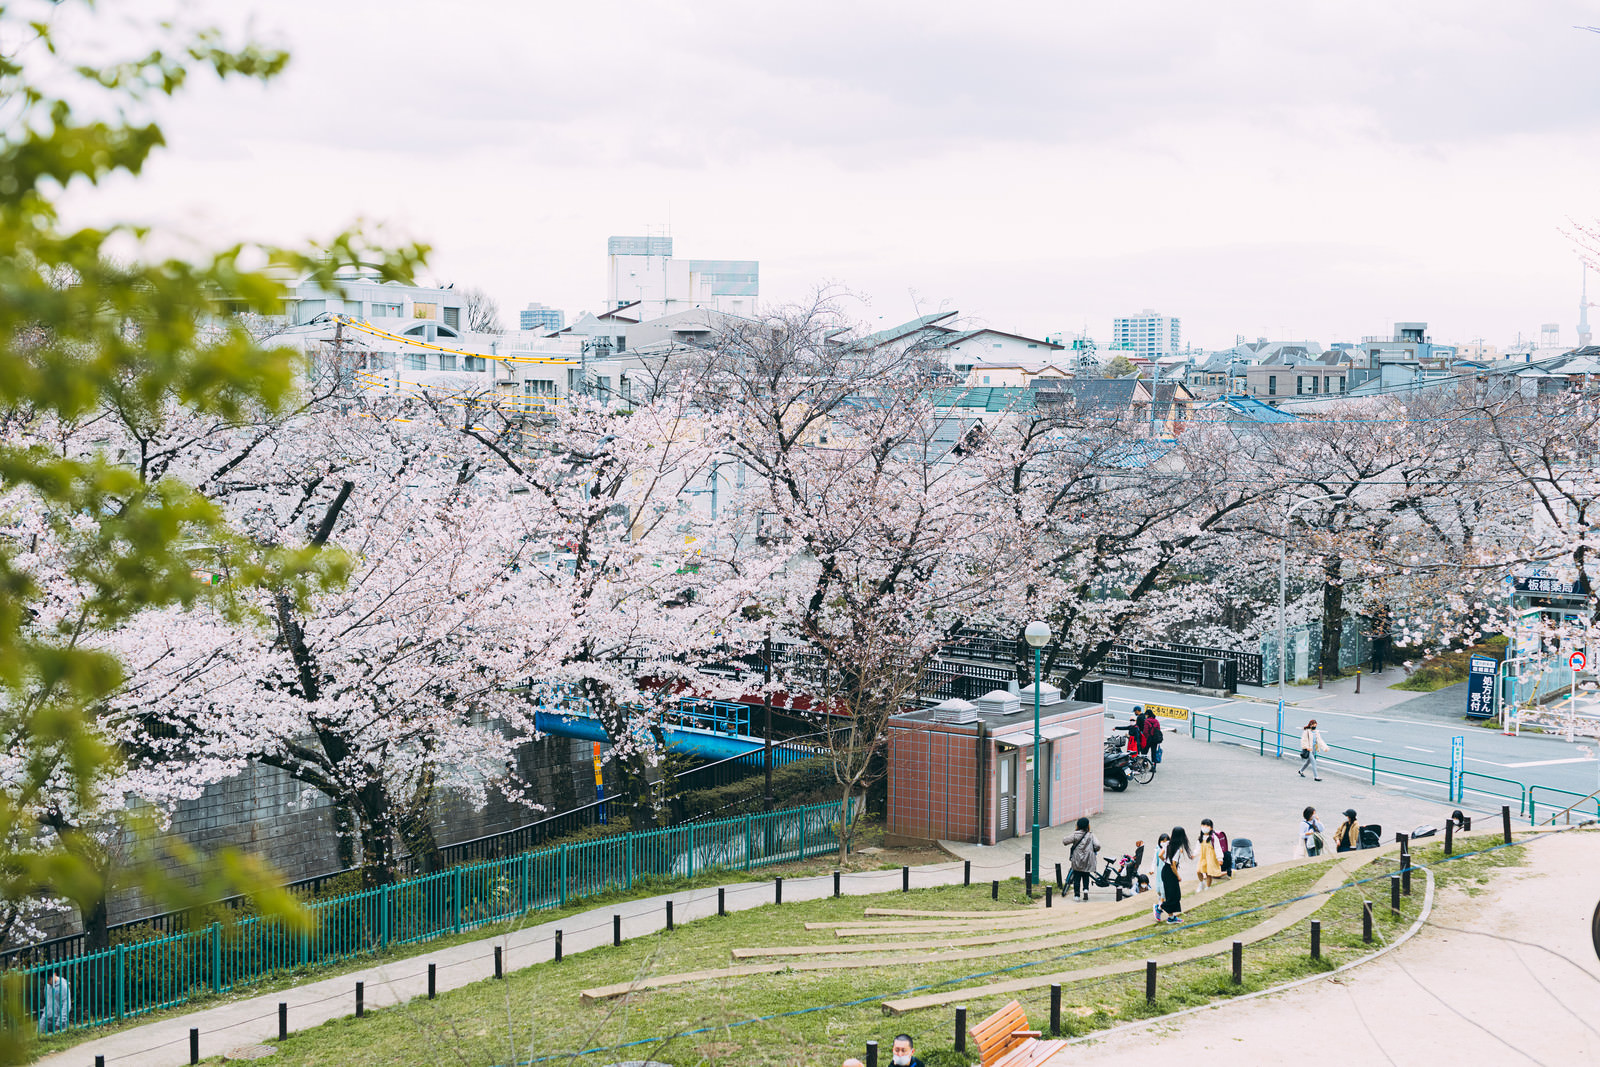 「板橋区立加賀公園の高台から桜の様子 | フリー素材のぱくたそ」の写真